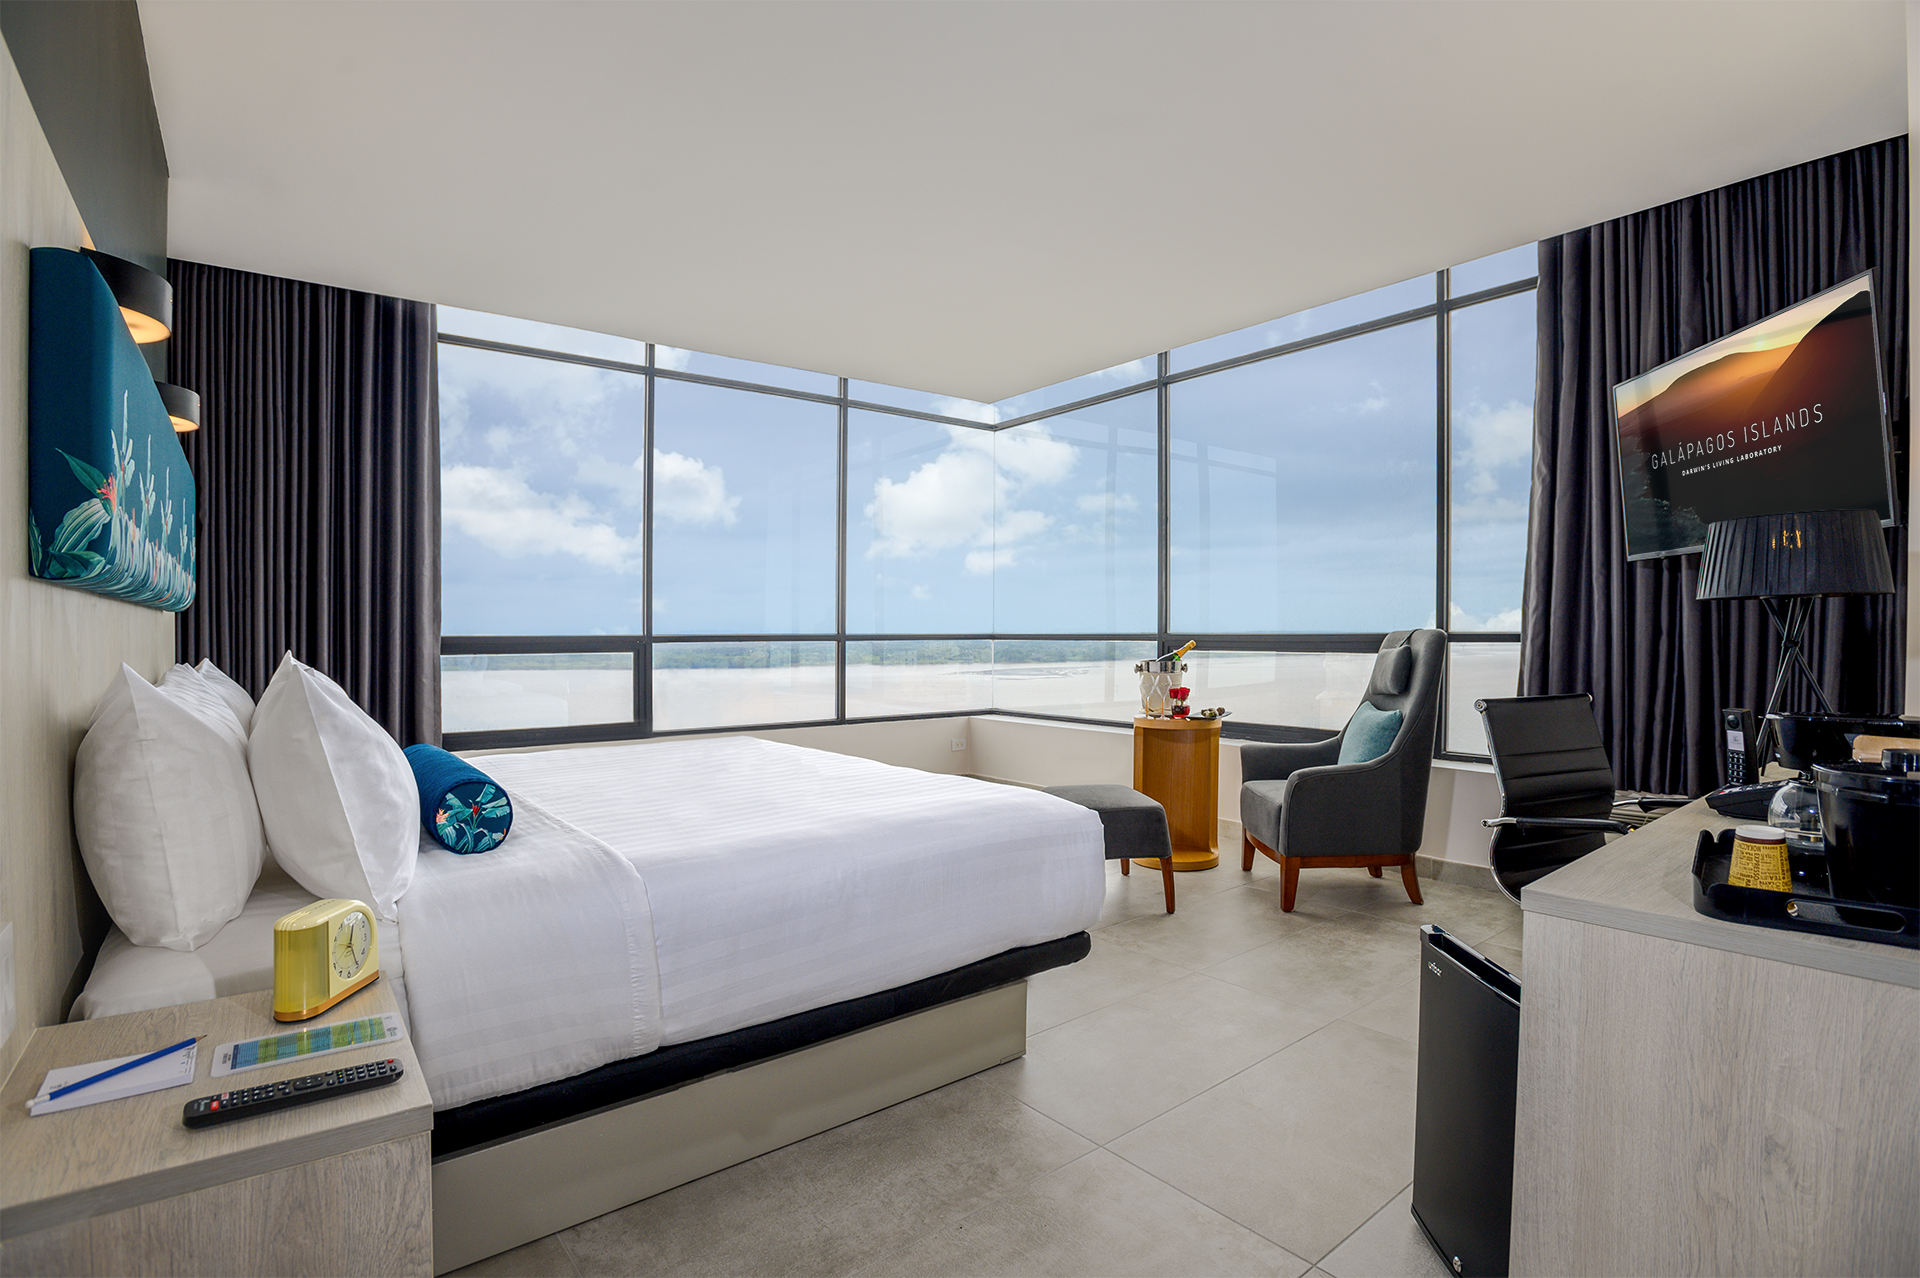 Oceania Vista cabins and suites | CruiseMapper